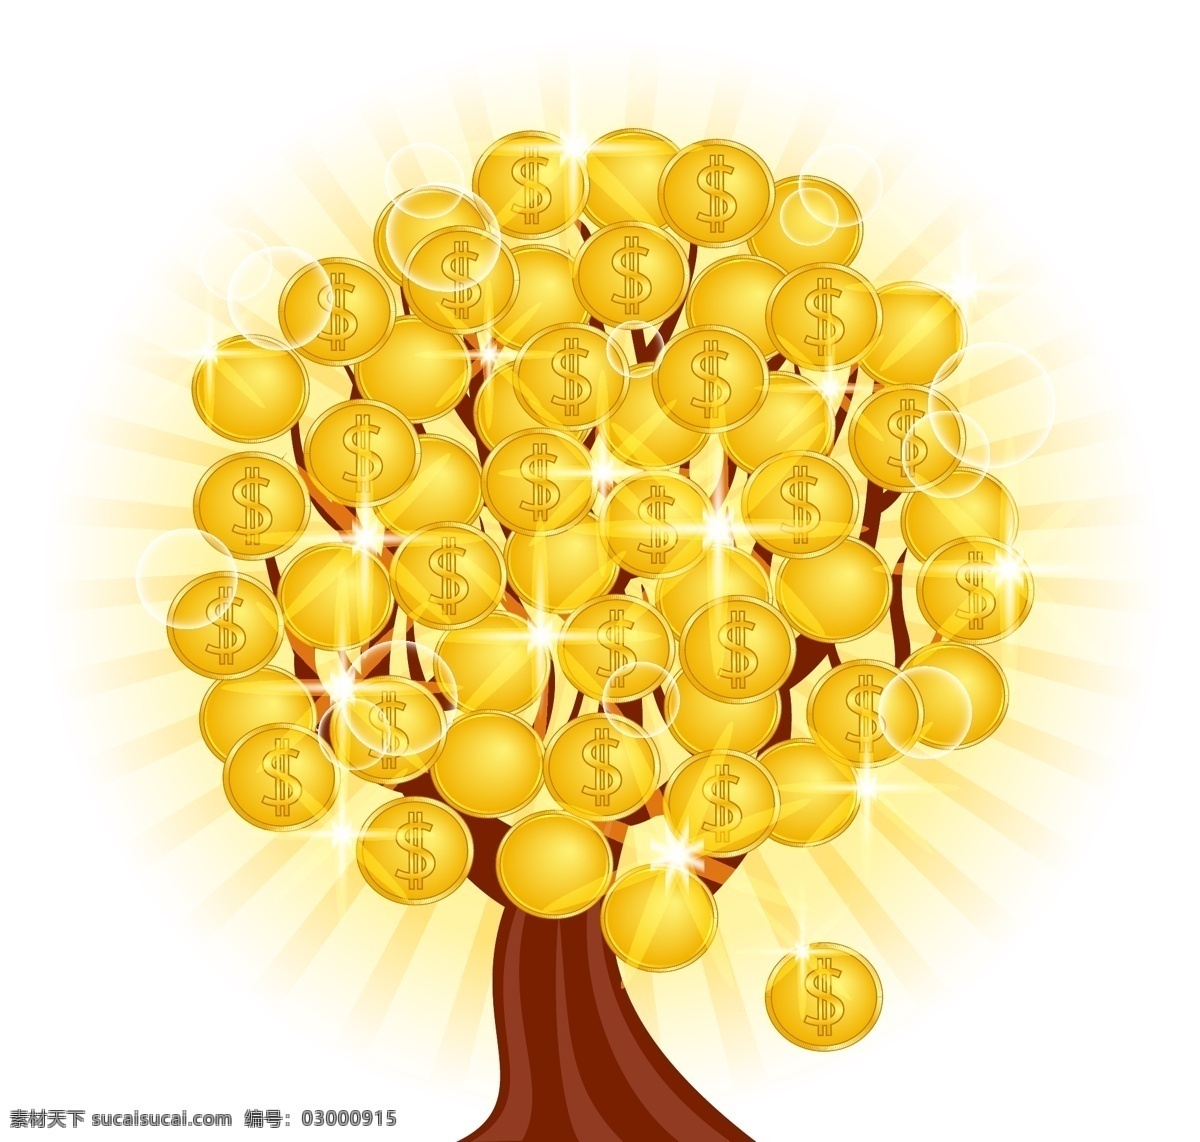 金币树矢量 金币树素材 招财树 聚财树 金币 共享设计矢量